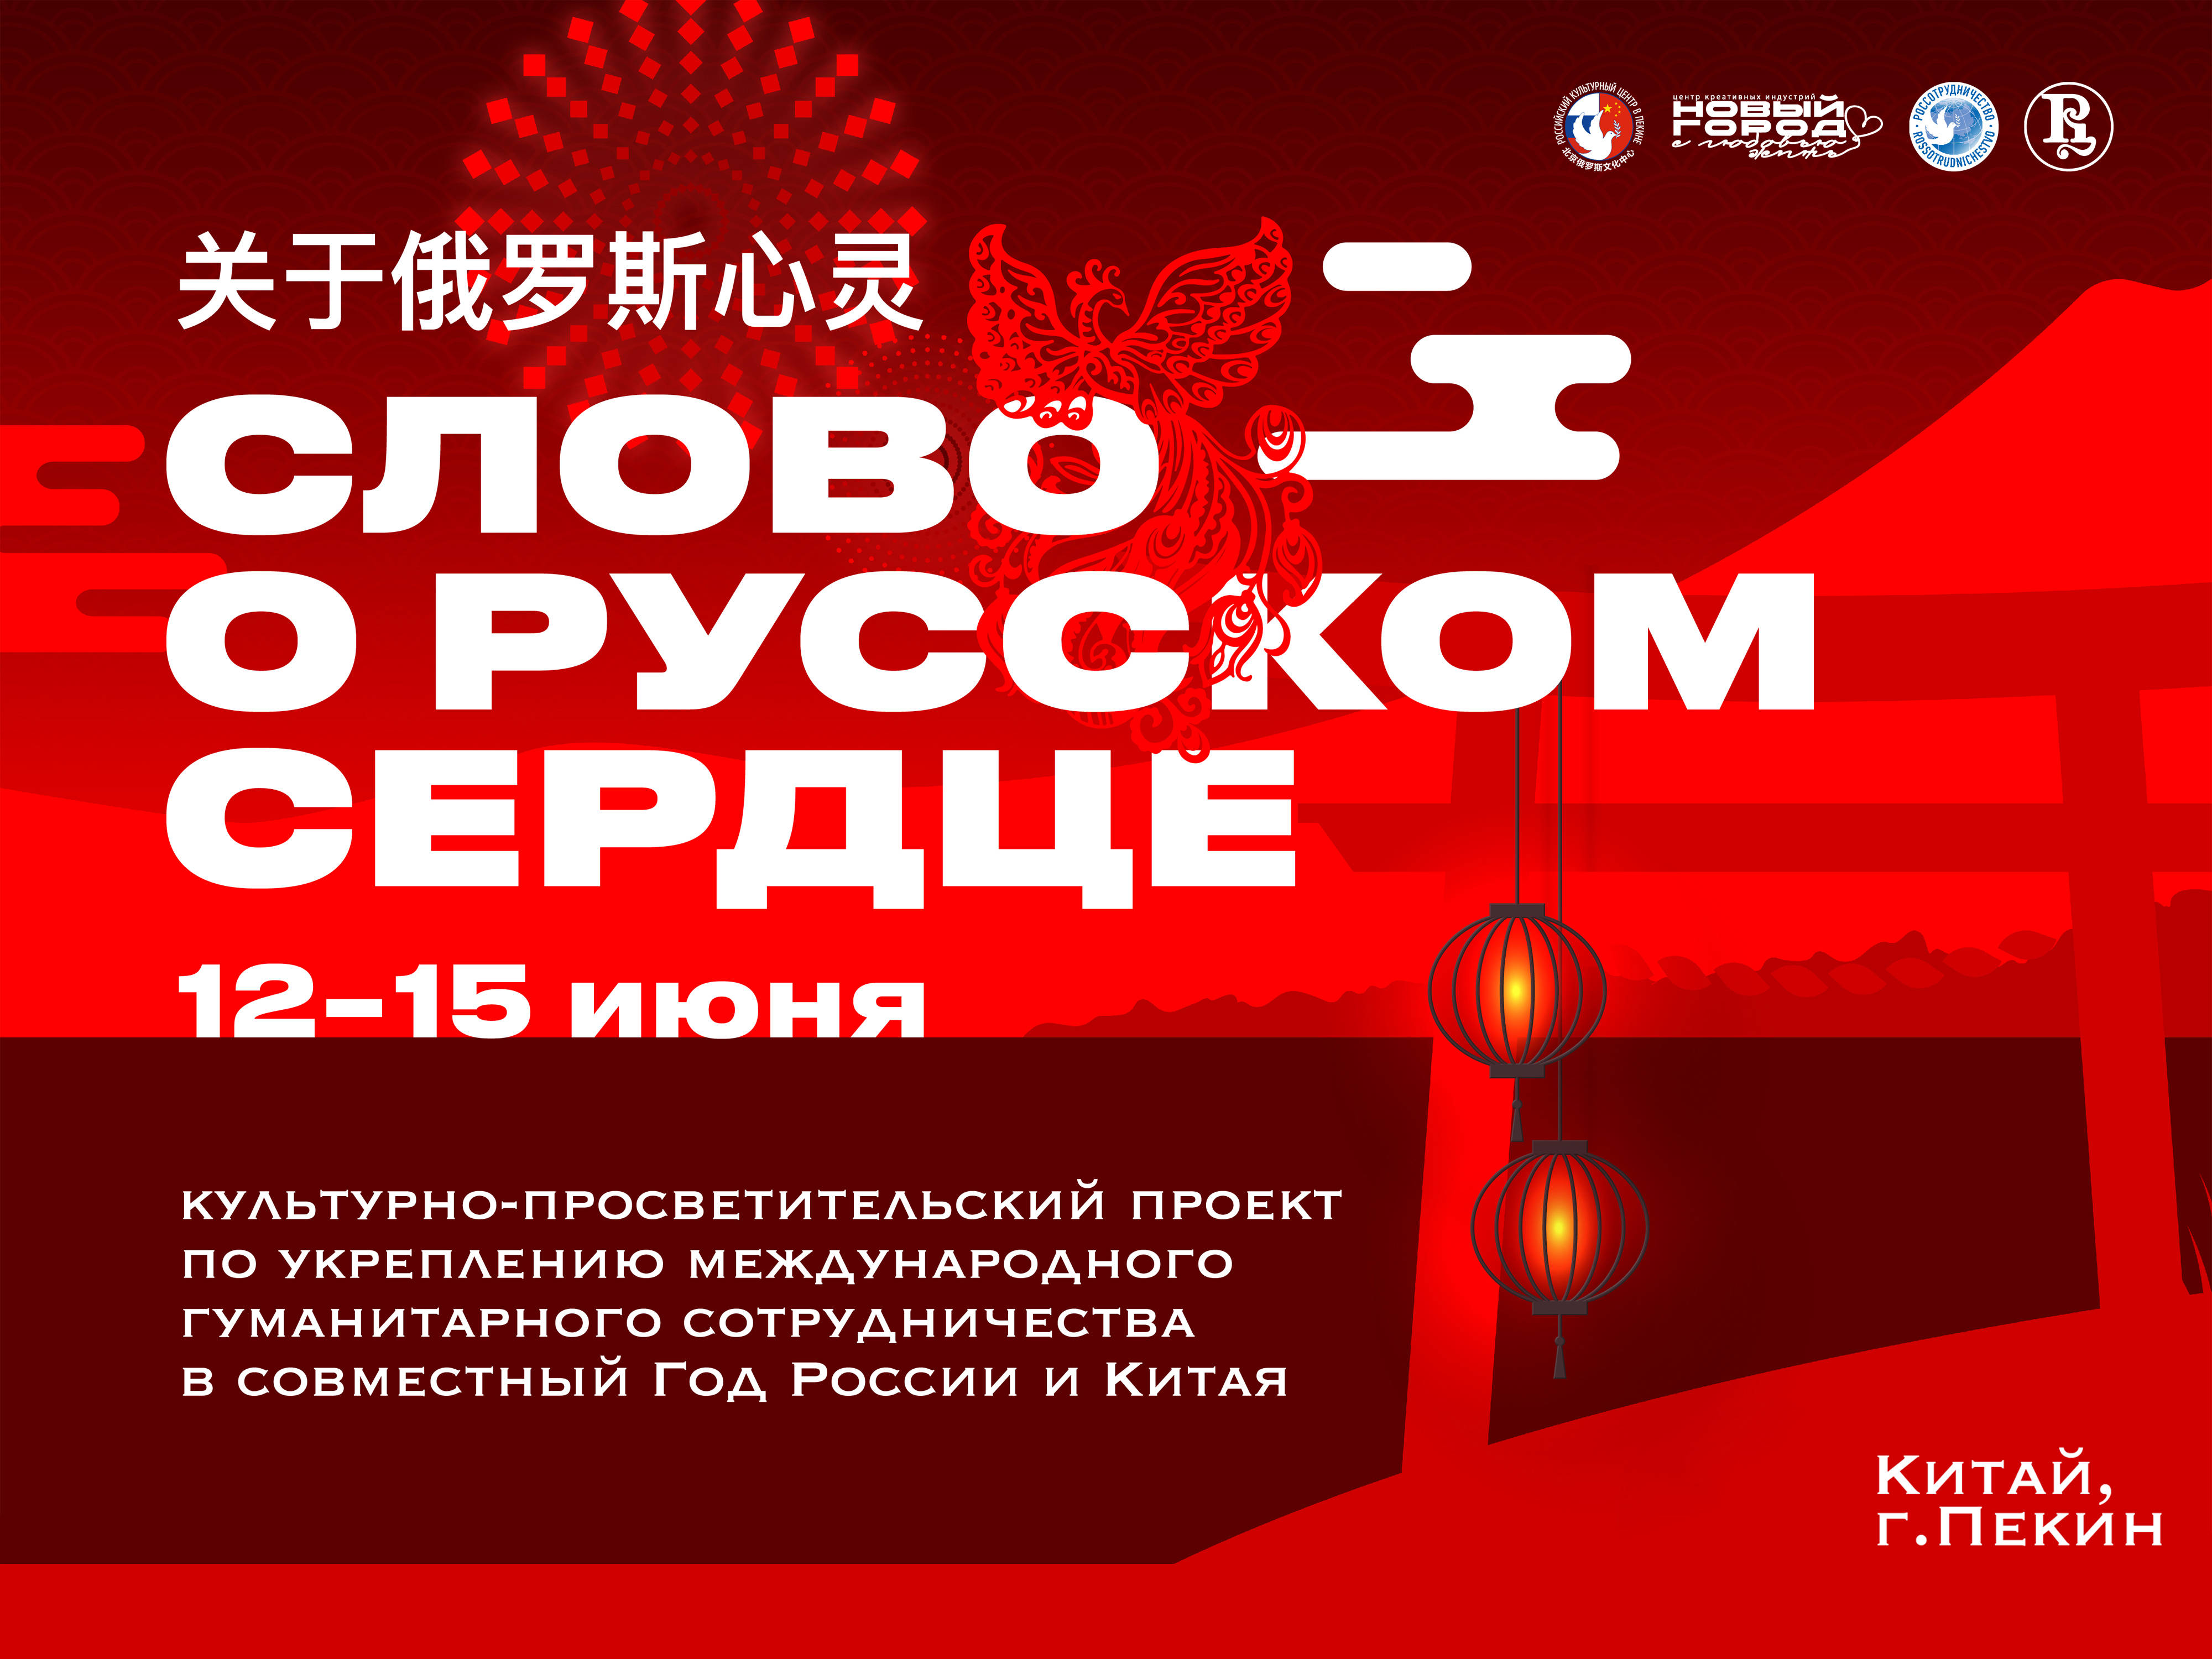 在将于北京展览馆举行的bj expo博览会上,俄罗斯联邦20多个地区将向